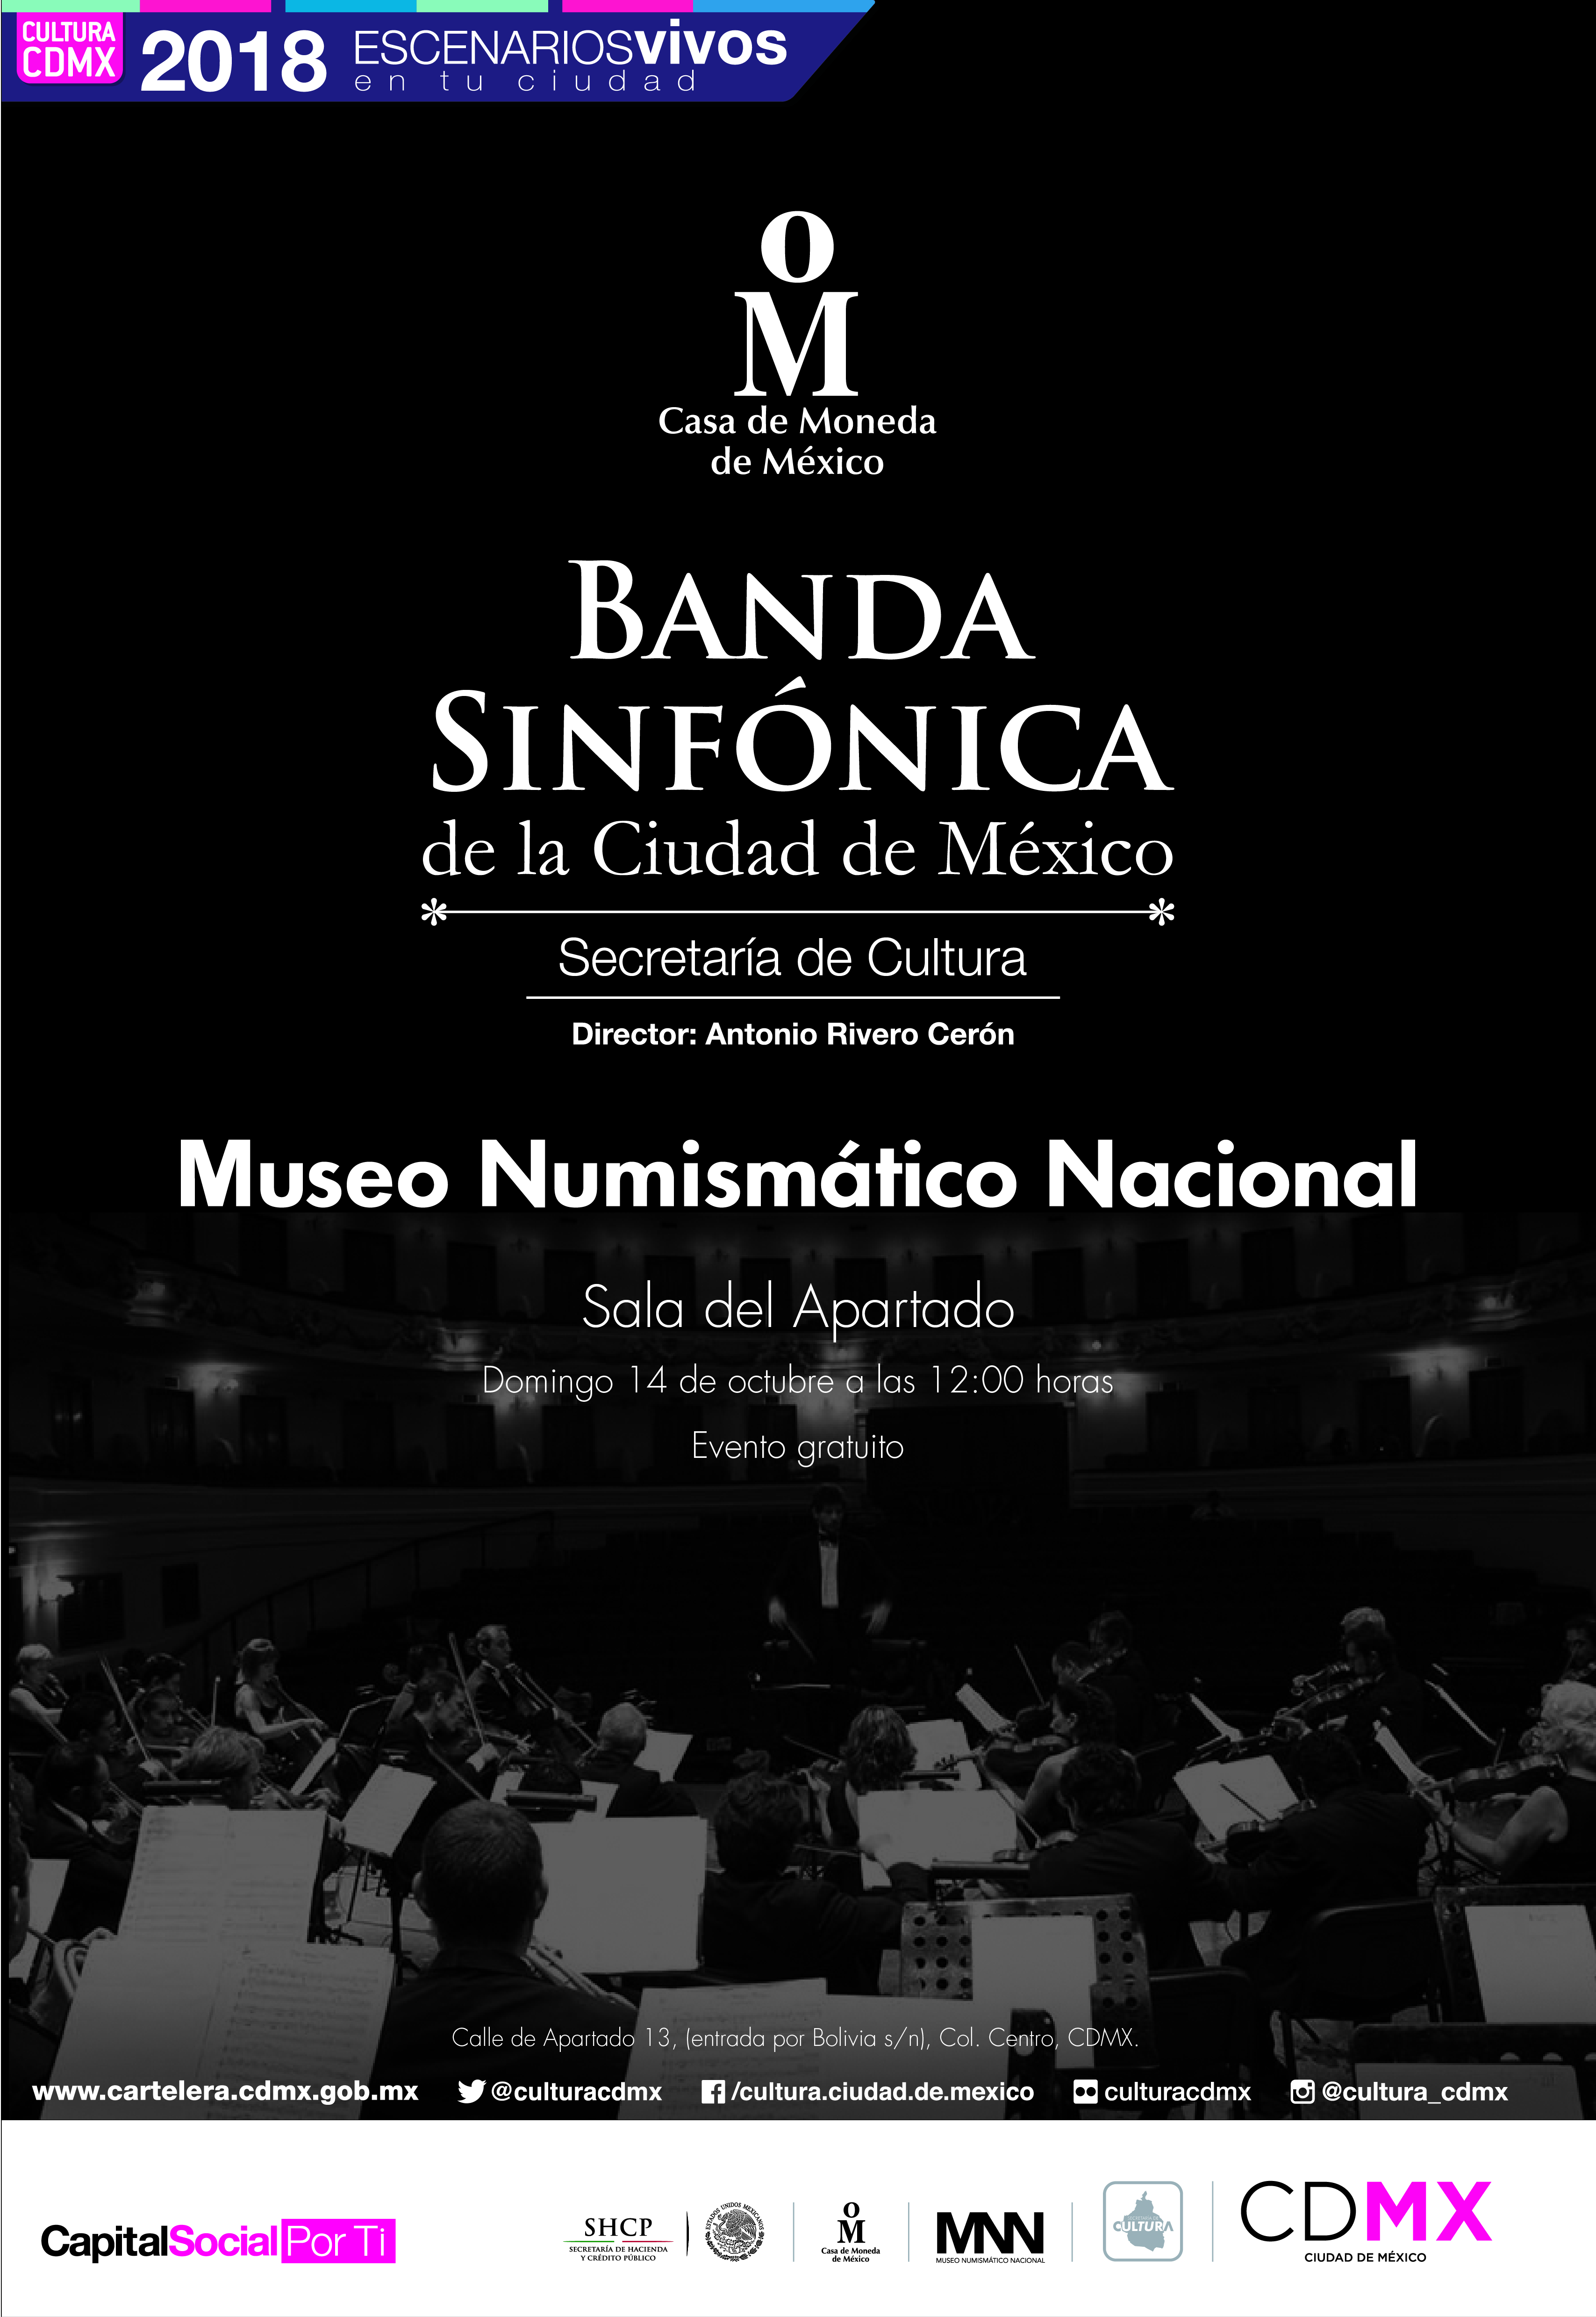 Banda Sinfónica de la Ciudad de México, dirección Antonio Rivero Cerón